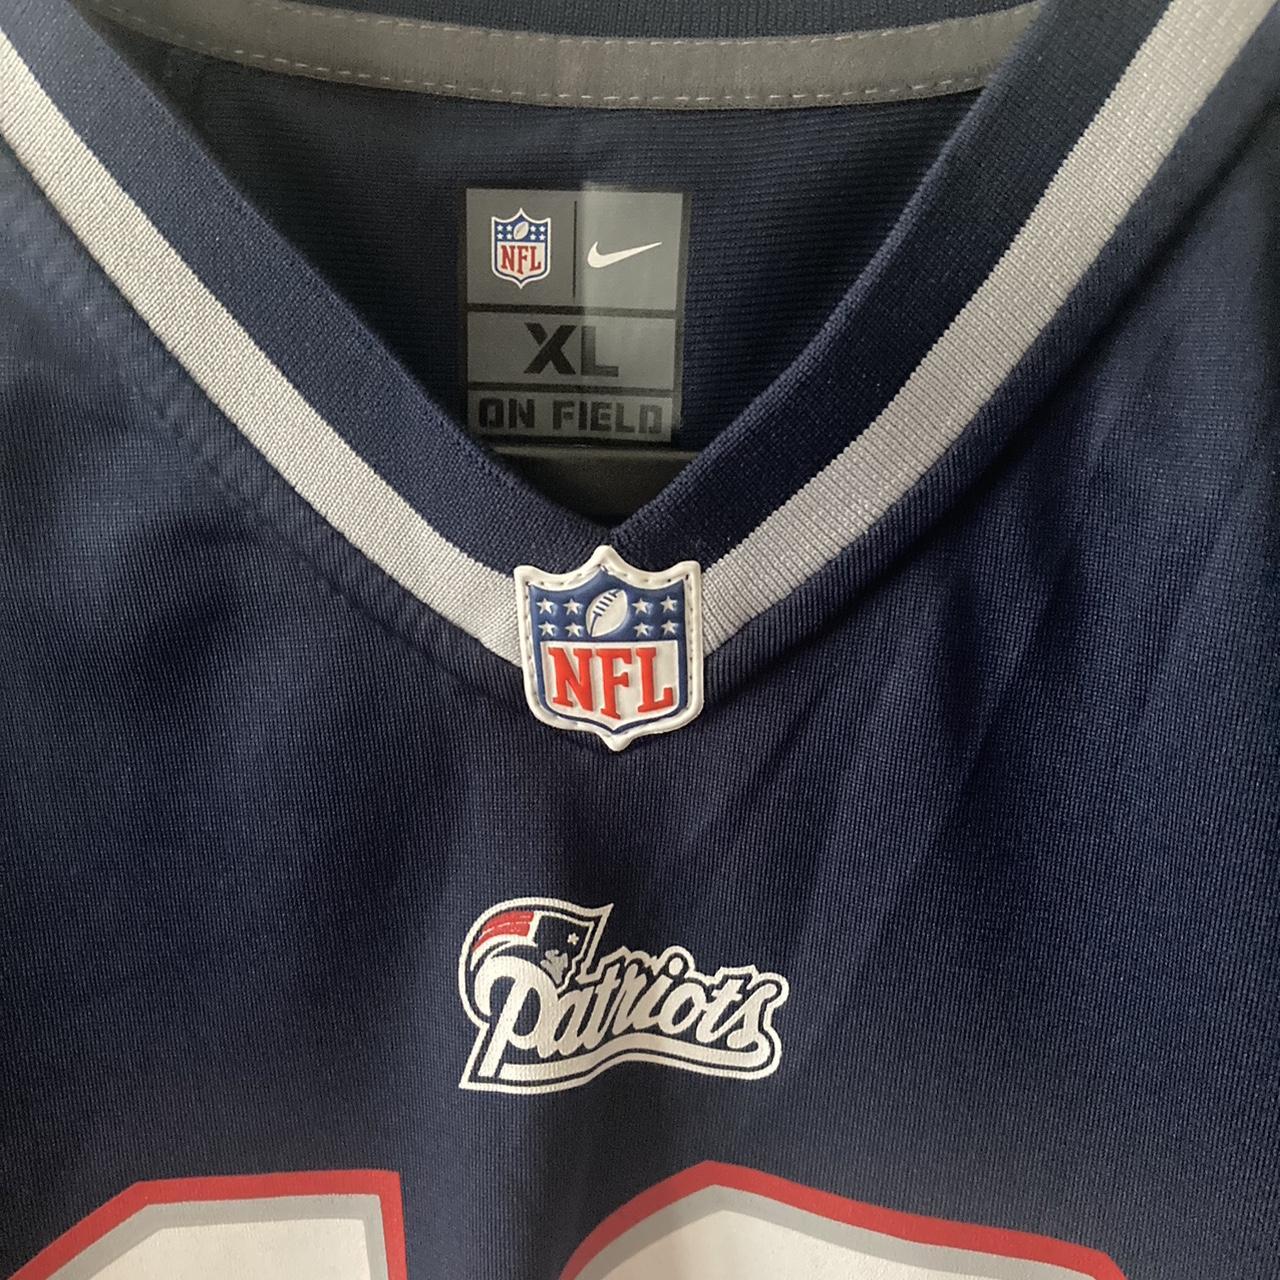 Nike NFL Patriots Tom Brady Jersey - S Nike NFL - Depop